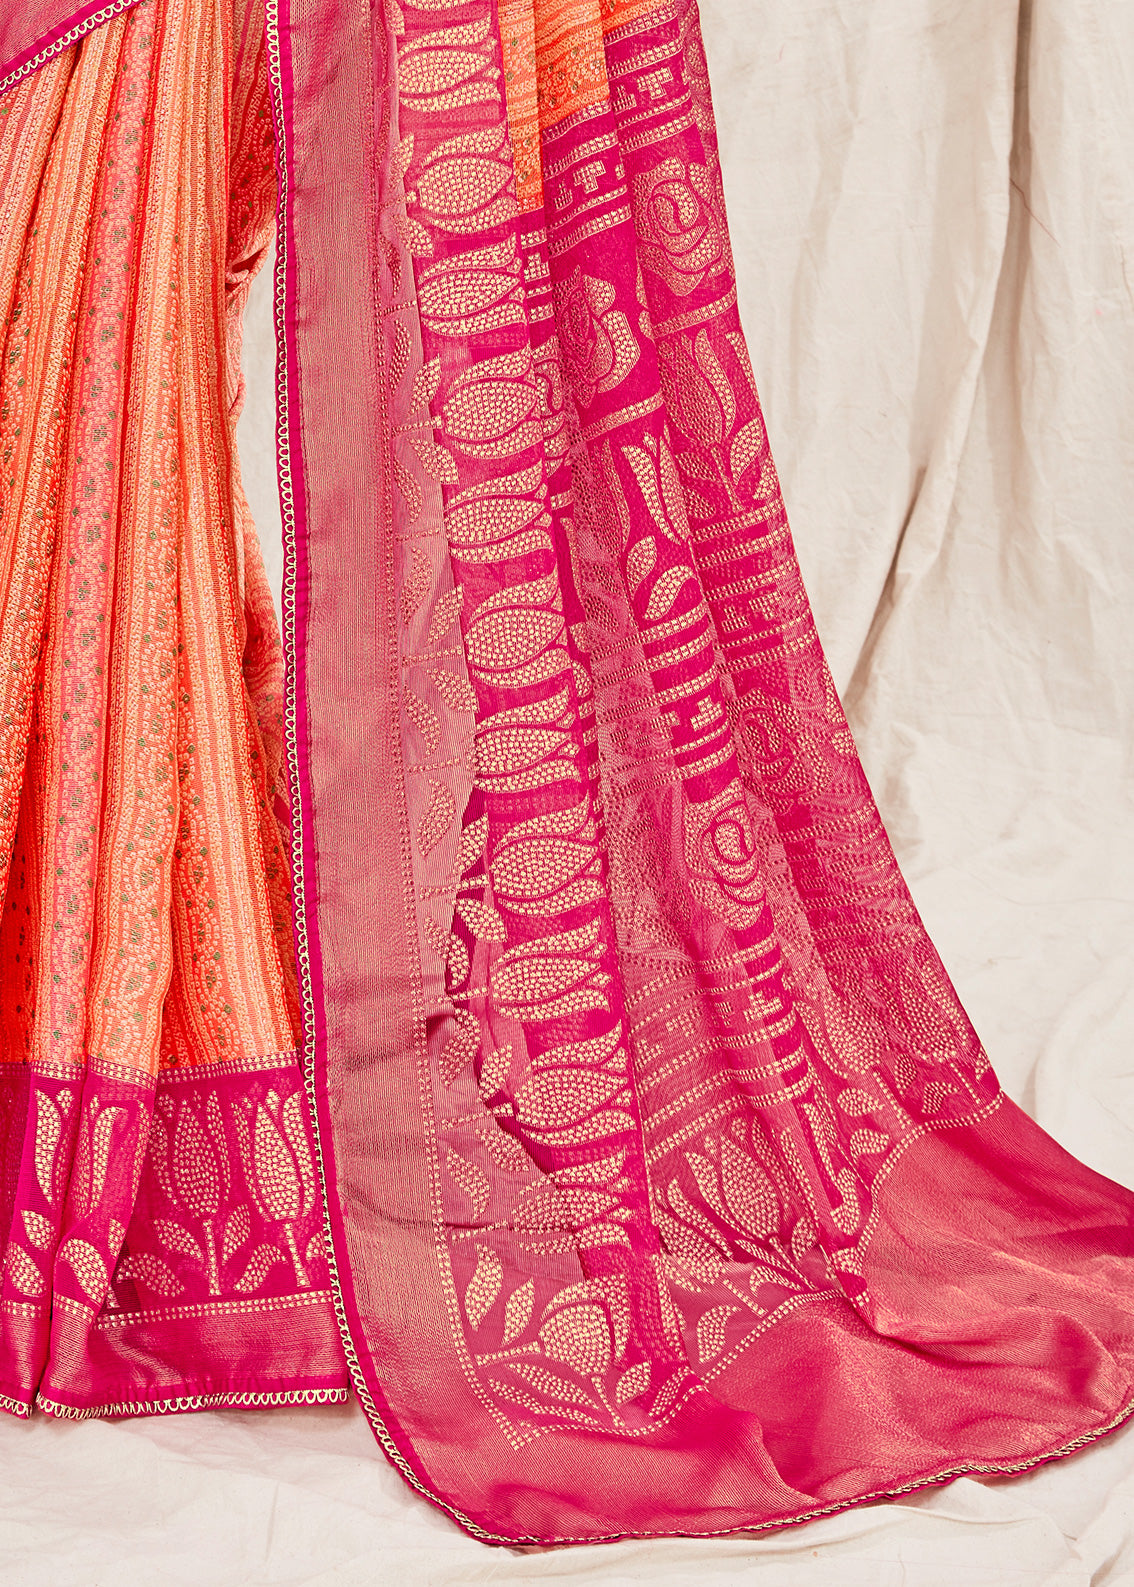 Bandhani Bandhej Printed Orange Pink Soft Marble Chiffon Saree